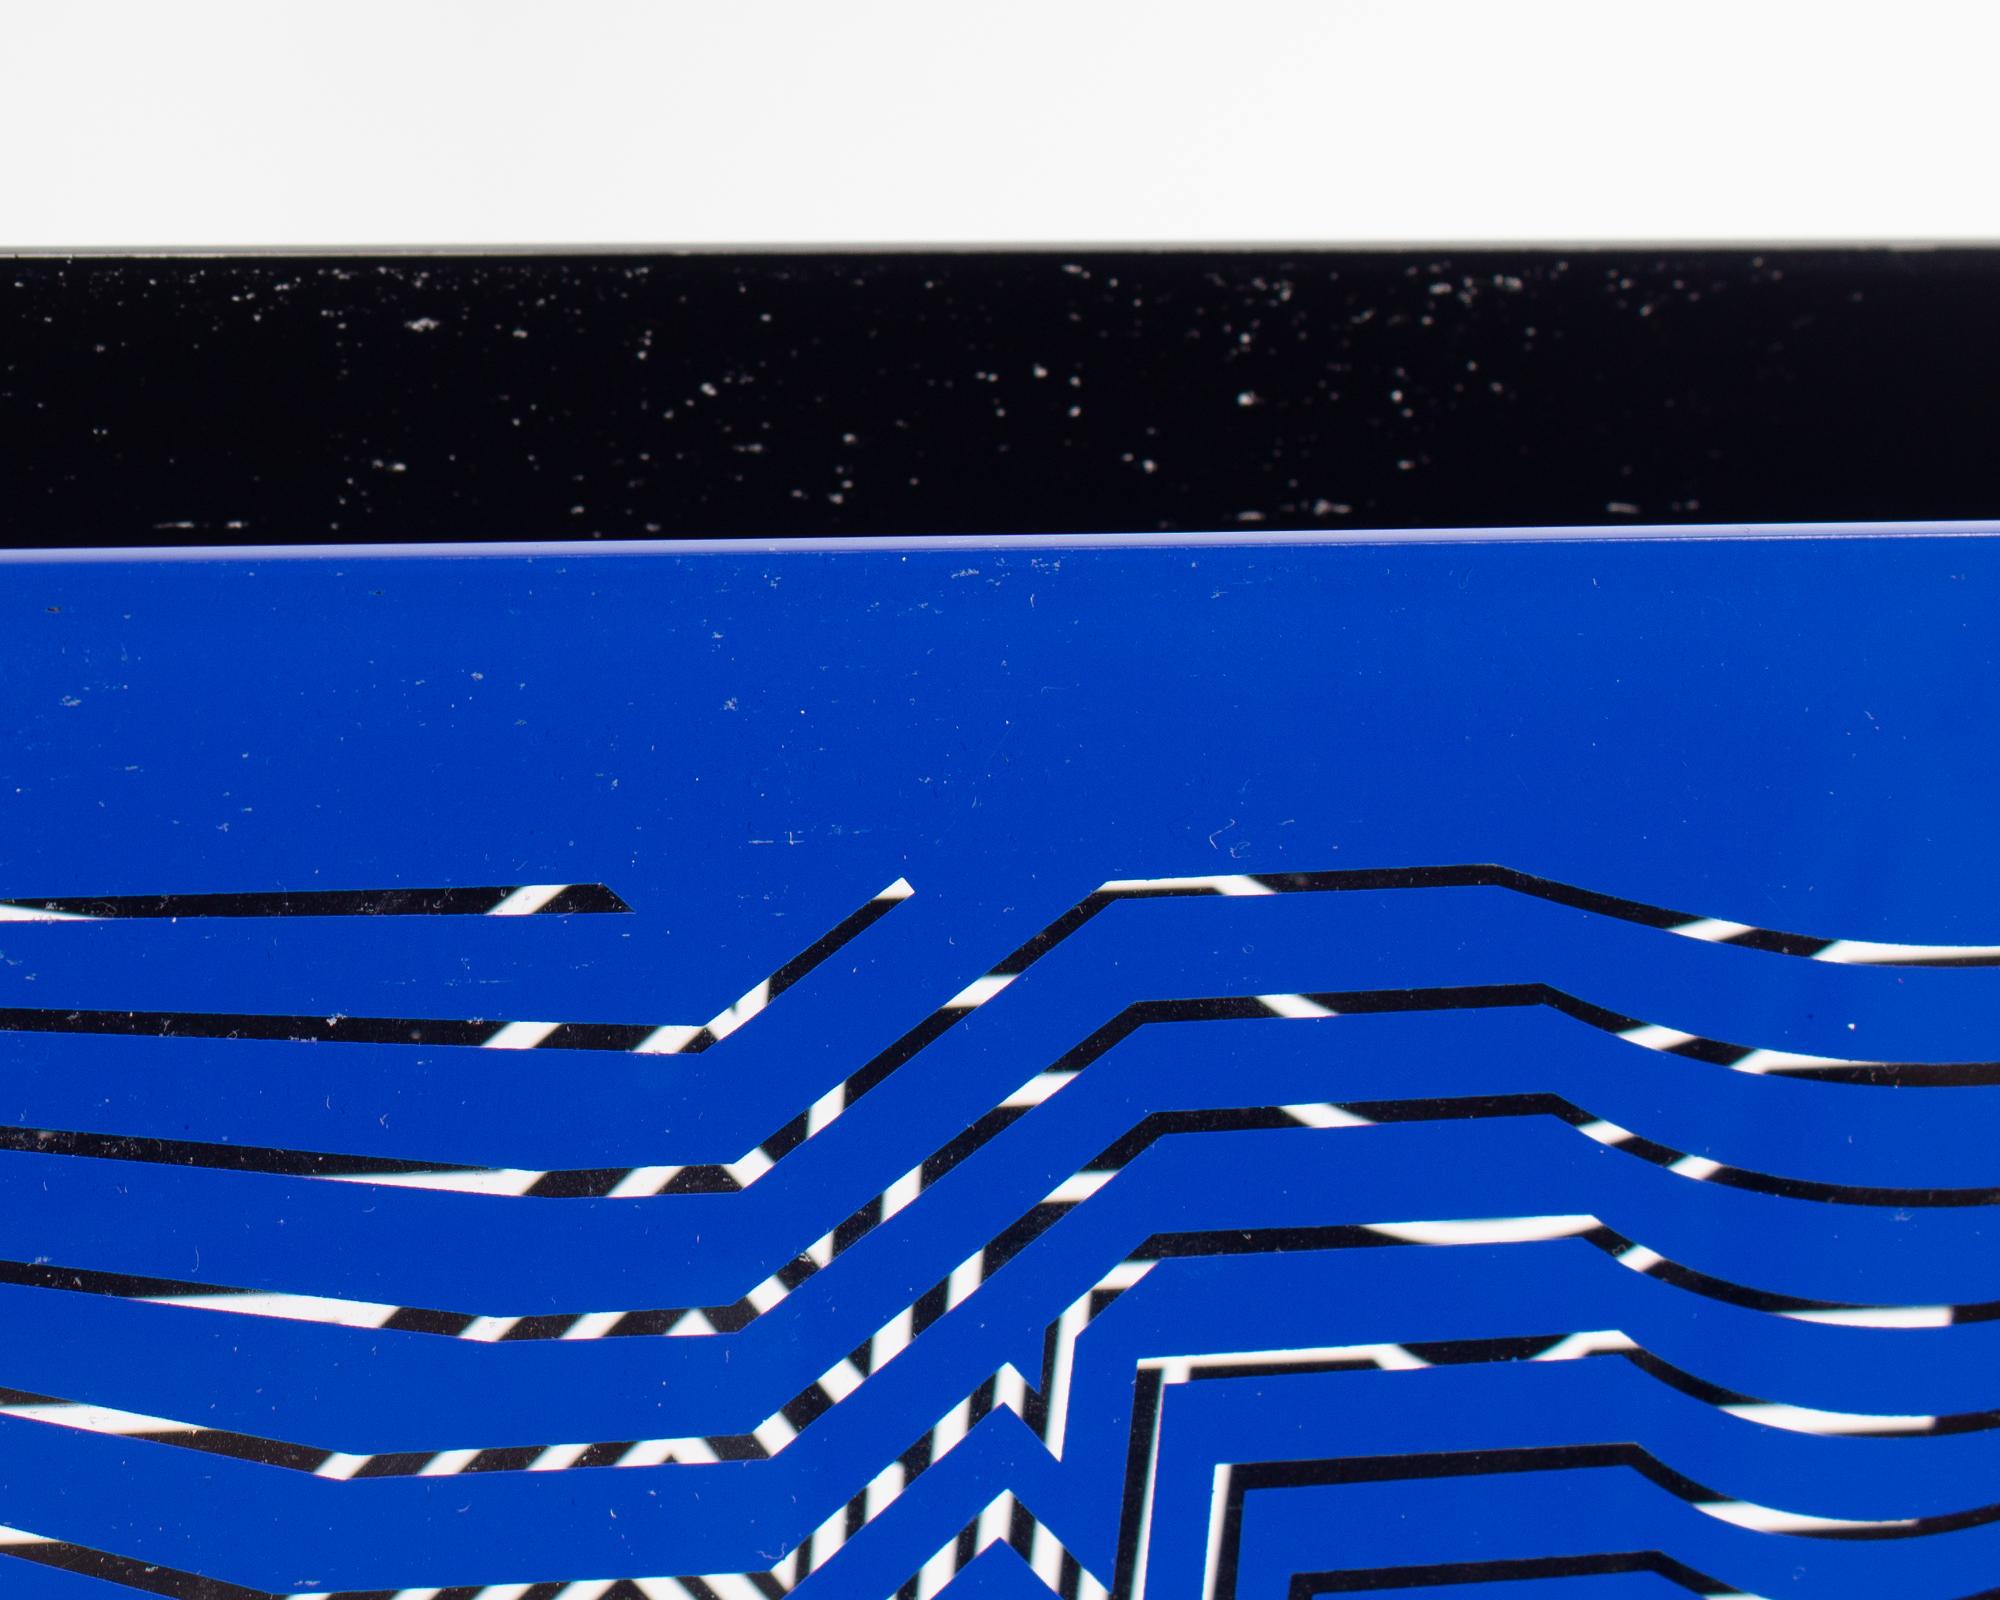 Eine Acrylskulptur des ungarisch-französischen Op-Art-Künstlers Victor Vasarely (1906-1997) aus dem Jahr 1981 in limitierter Auflage. Diese Skulptur besteht aus zwei Acryltafeln mit geometrischen Mustern, eine in Blau und eine in Schwarz, die an den